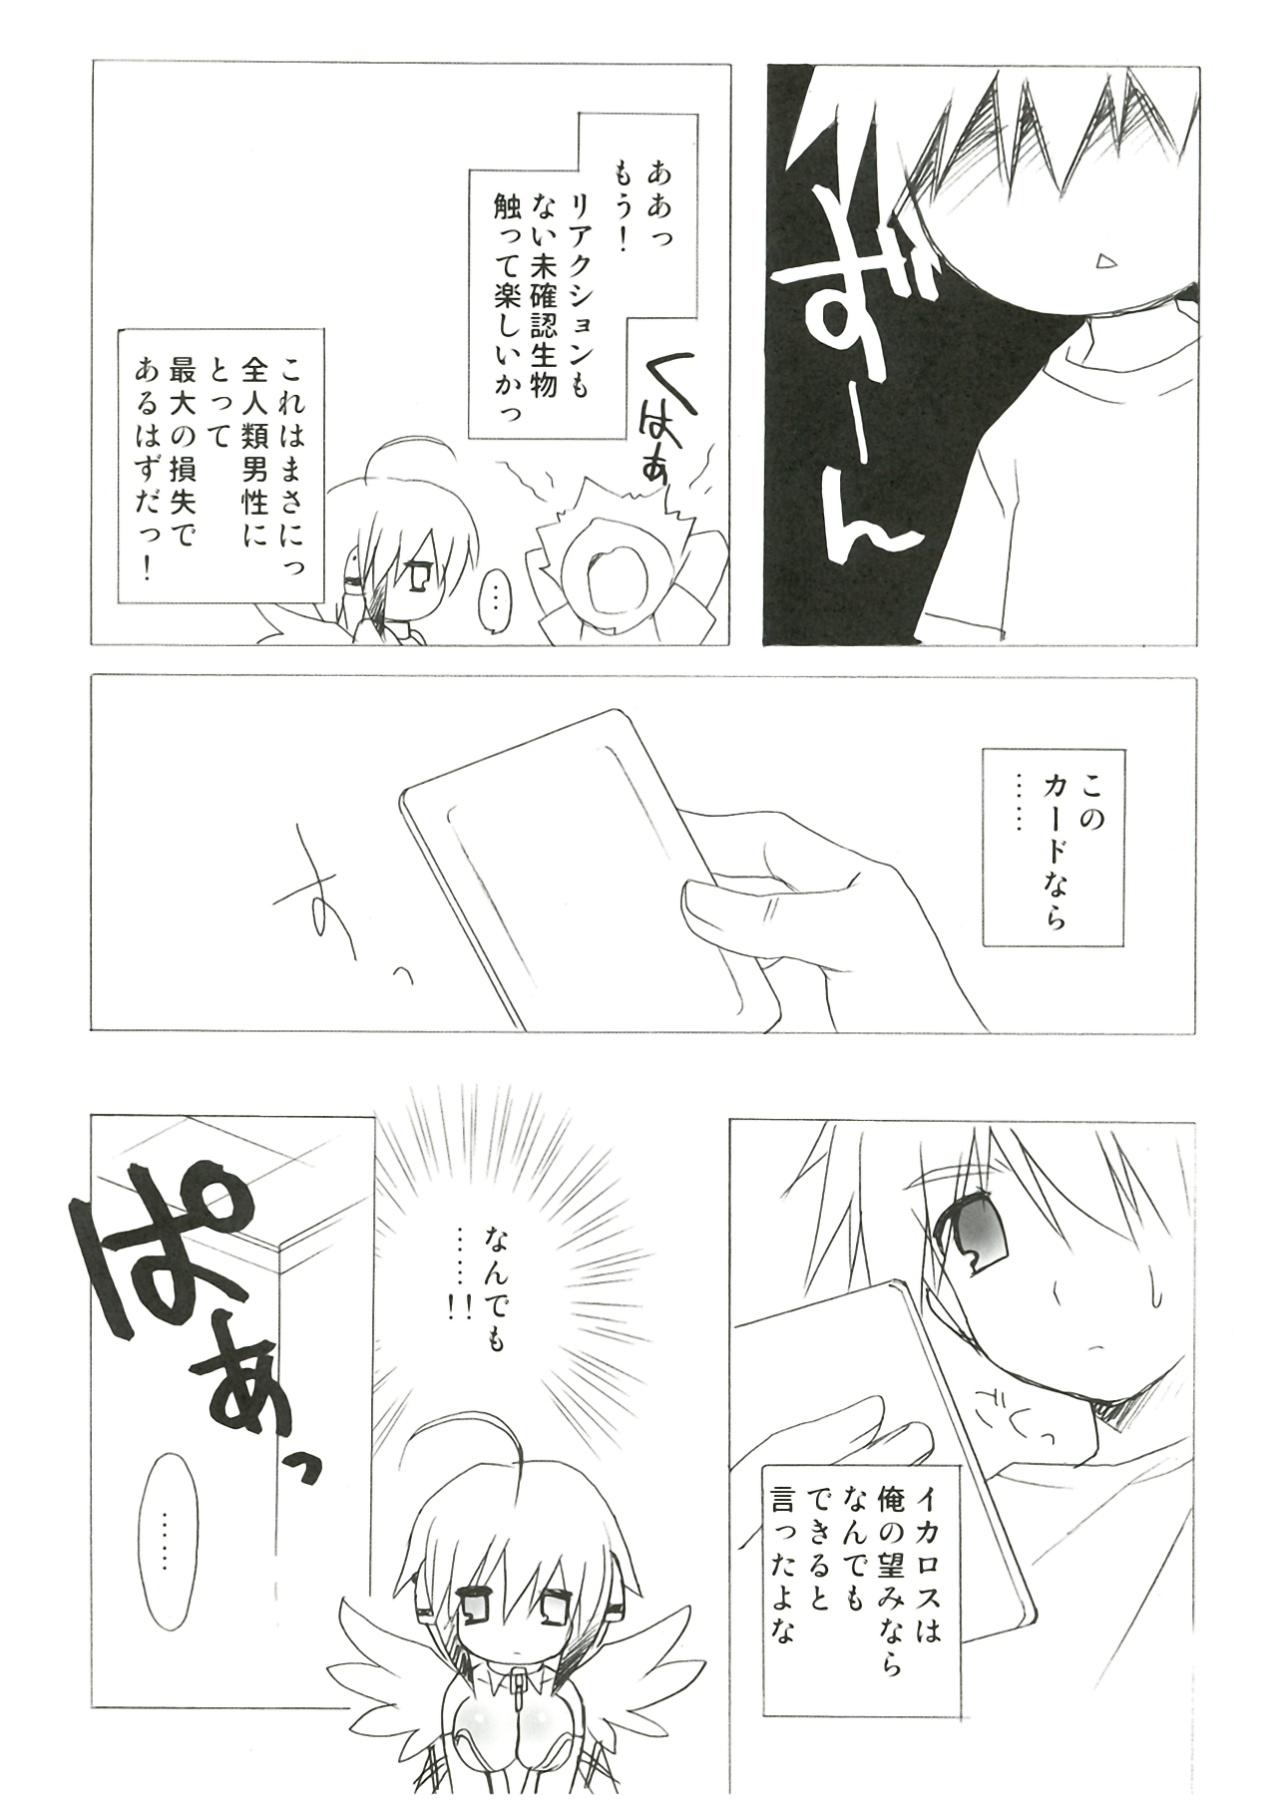 Pasivo Kokoro no Otoshimono - Sora no otoshimono Hardsex - Page 10